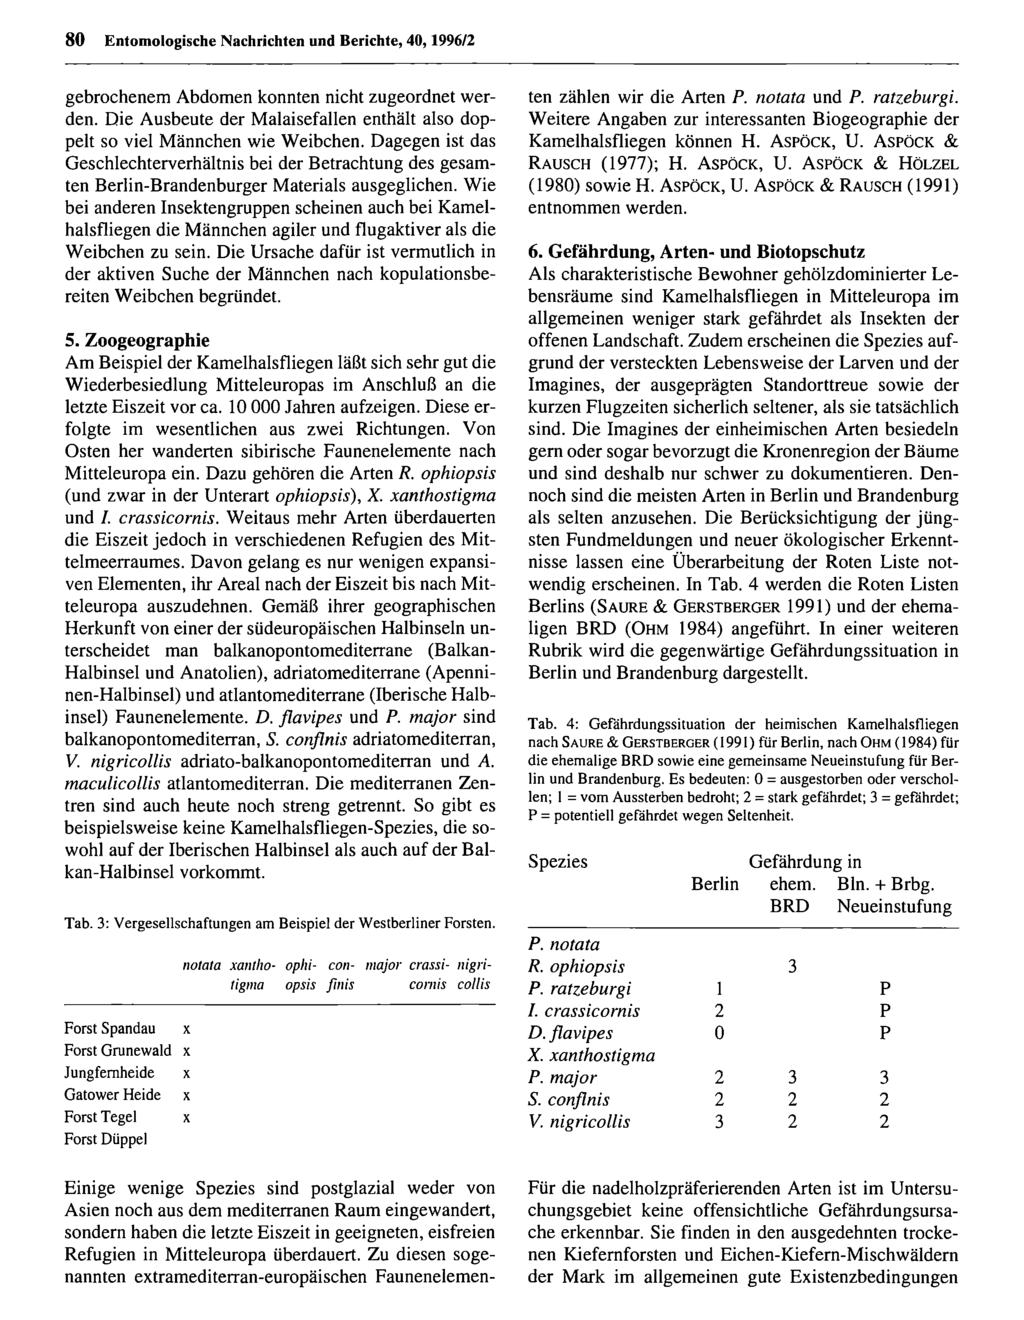 80 Entomologische Nachrichten Entomologische und Berichte, Nachrichten 40,1996/2 und Berichte; download unter www.biologiezentrum.at gebrochenem Abdomen konnten nicht zugeordnet werden.